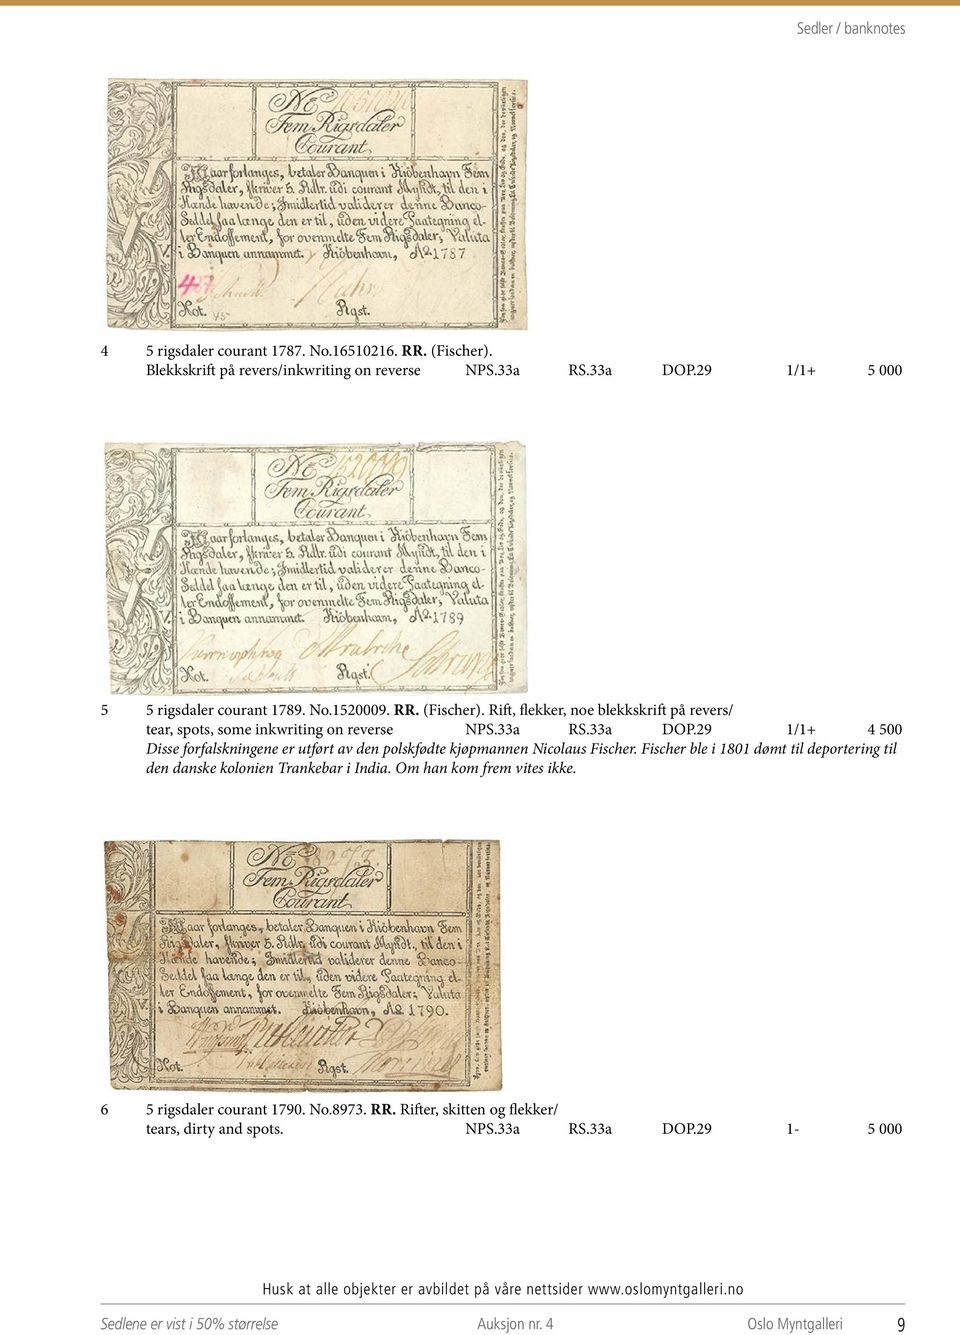 29 1/1+ 4 500 Disse forfalskningene er utført av den polskfødte kjøpmannen Nicolaus Fischer. Fischer ble i 1801 dømt til deportering til den danske kolonien Trankebar i India.